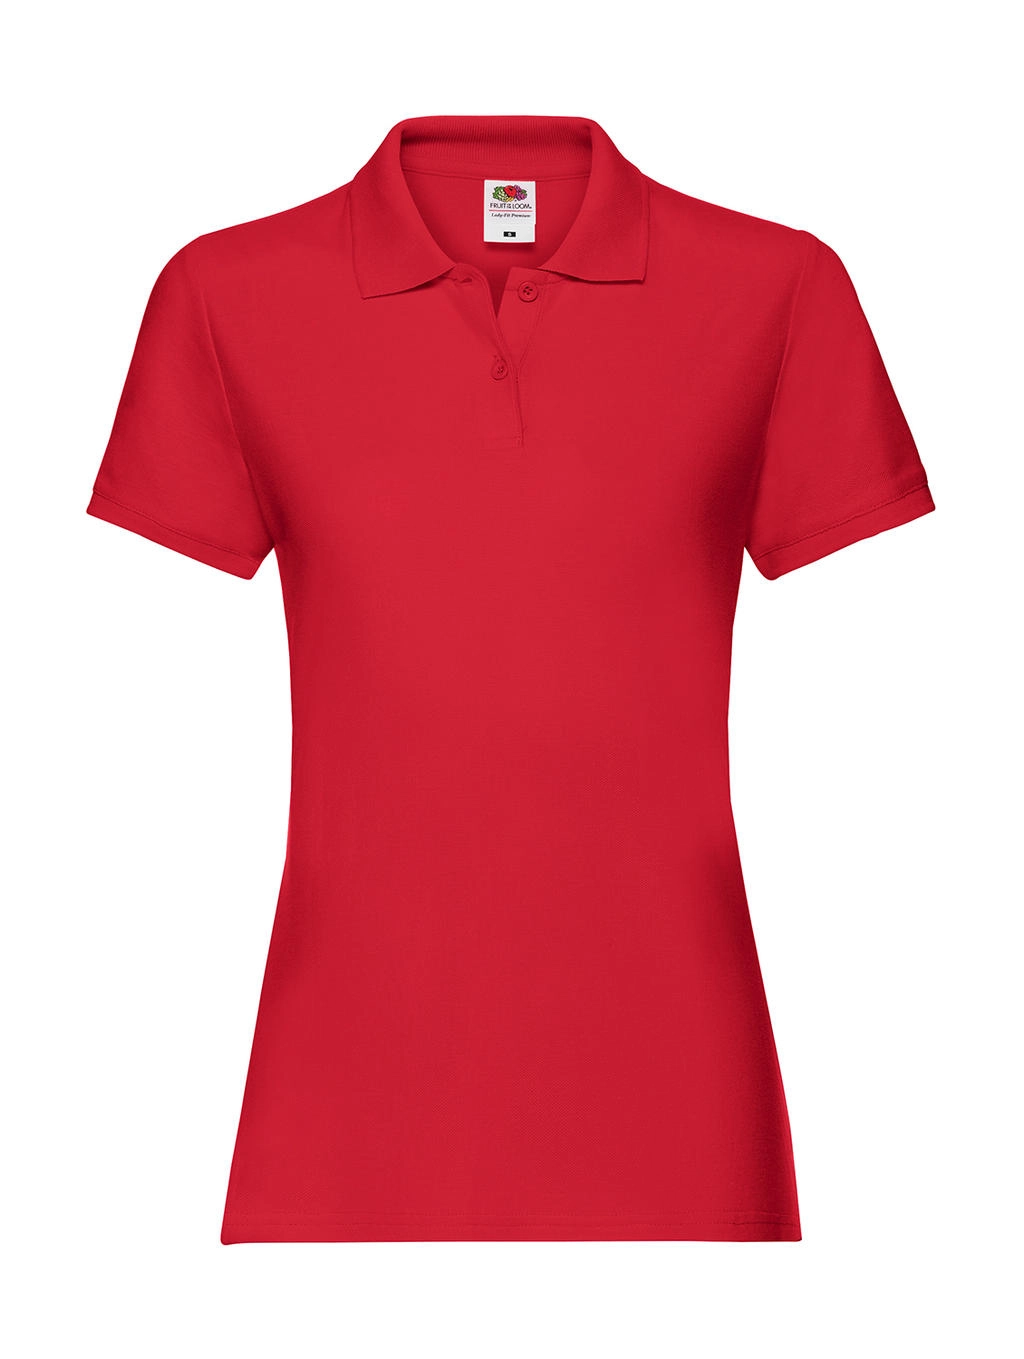 Ladies` Premium Polo zum Besticken und Bedrucken in der Farbe Red mit Ihren Logo, Schriftzug oder Motiv.